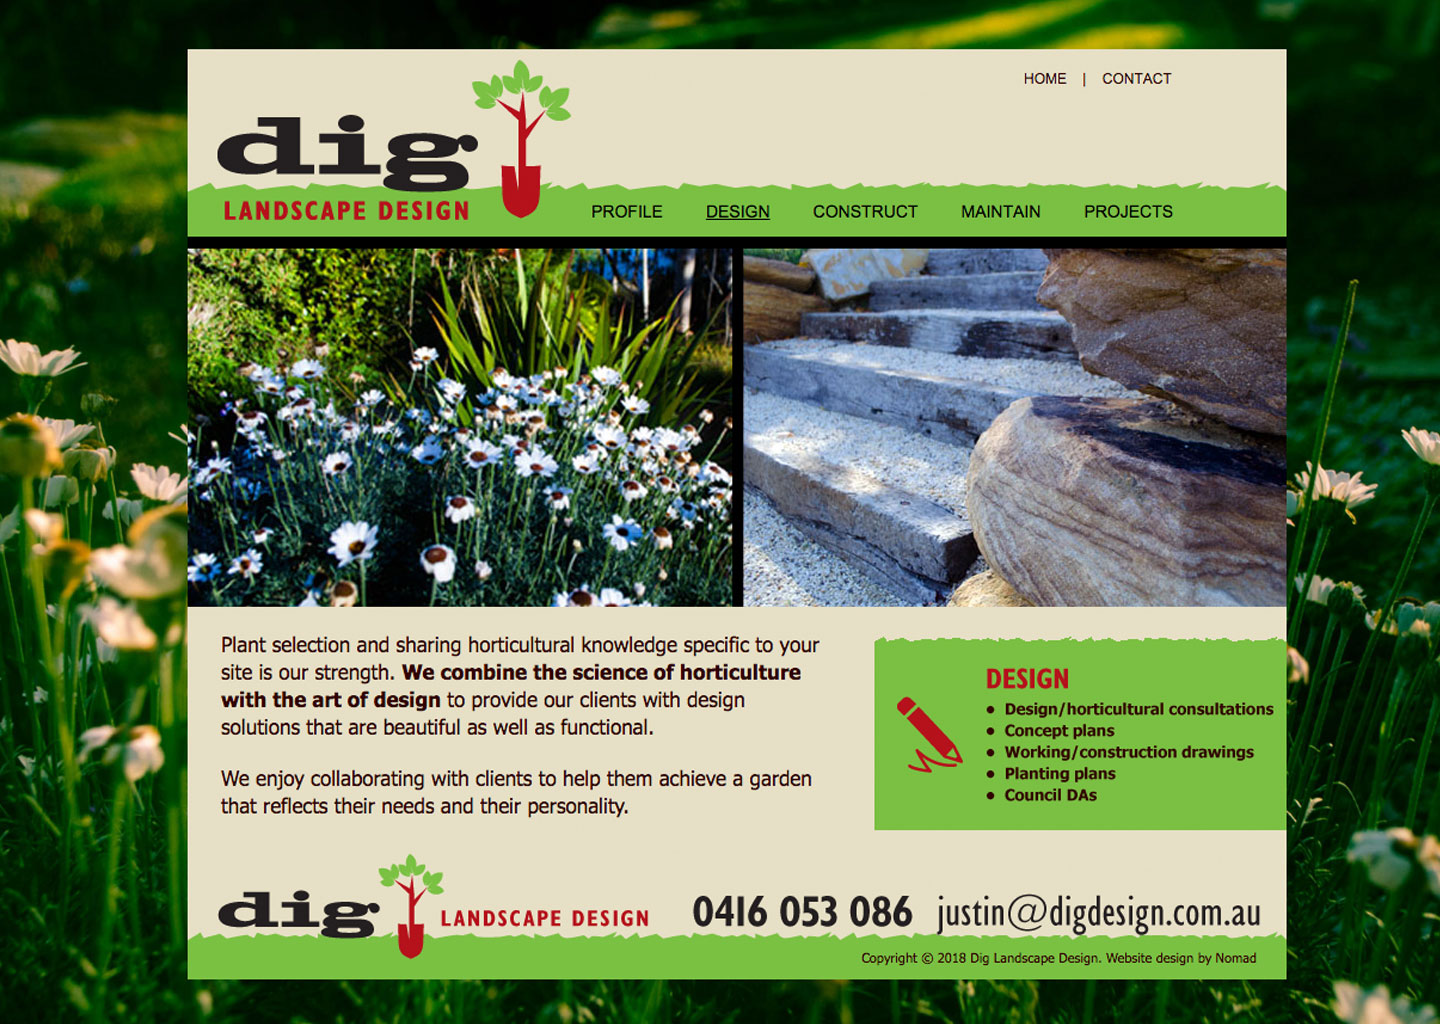 Dig Landscape Design website